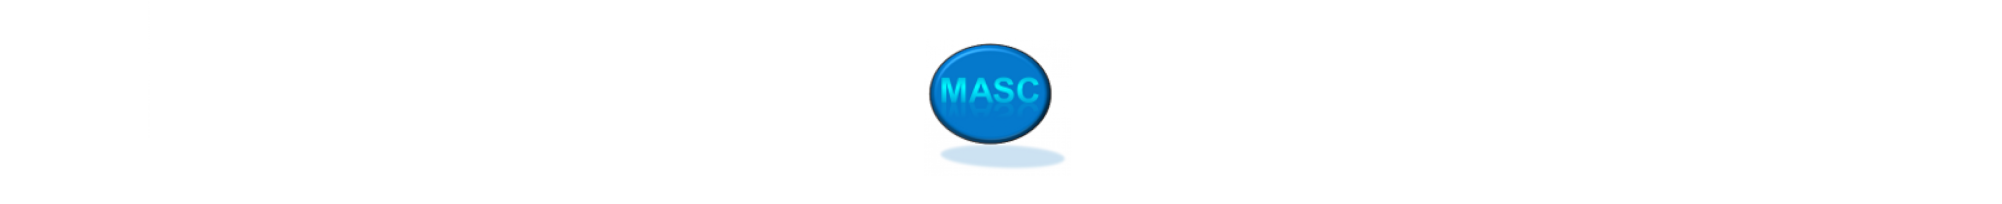 Presentation of MASC